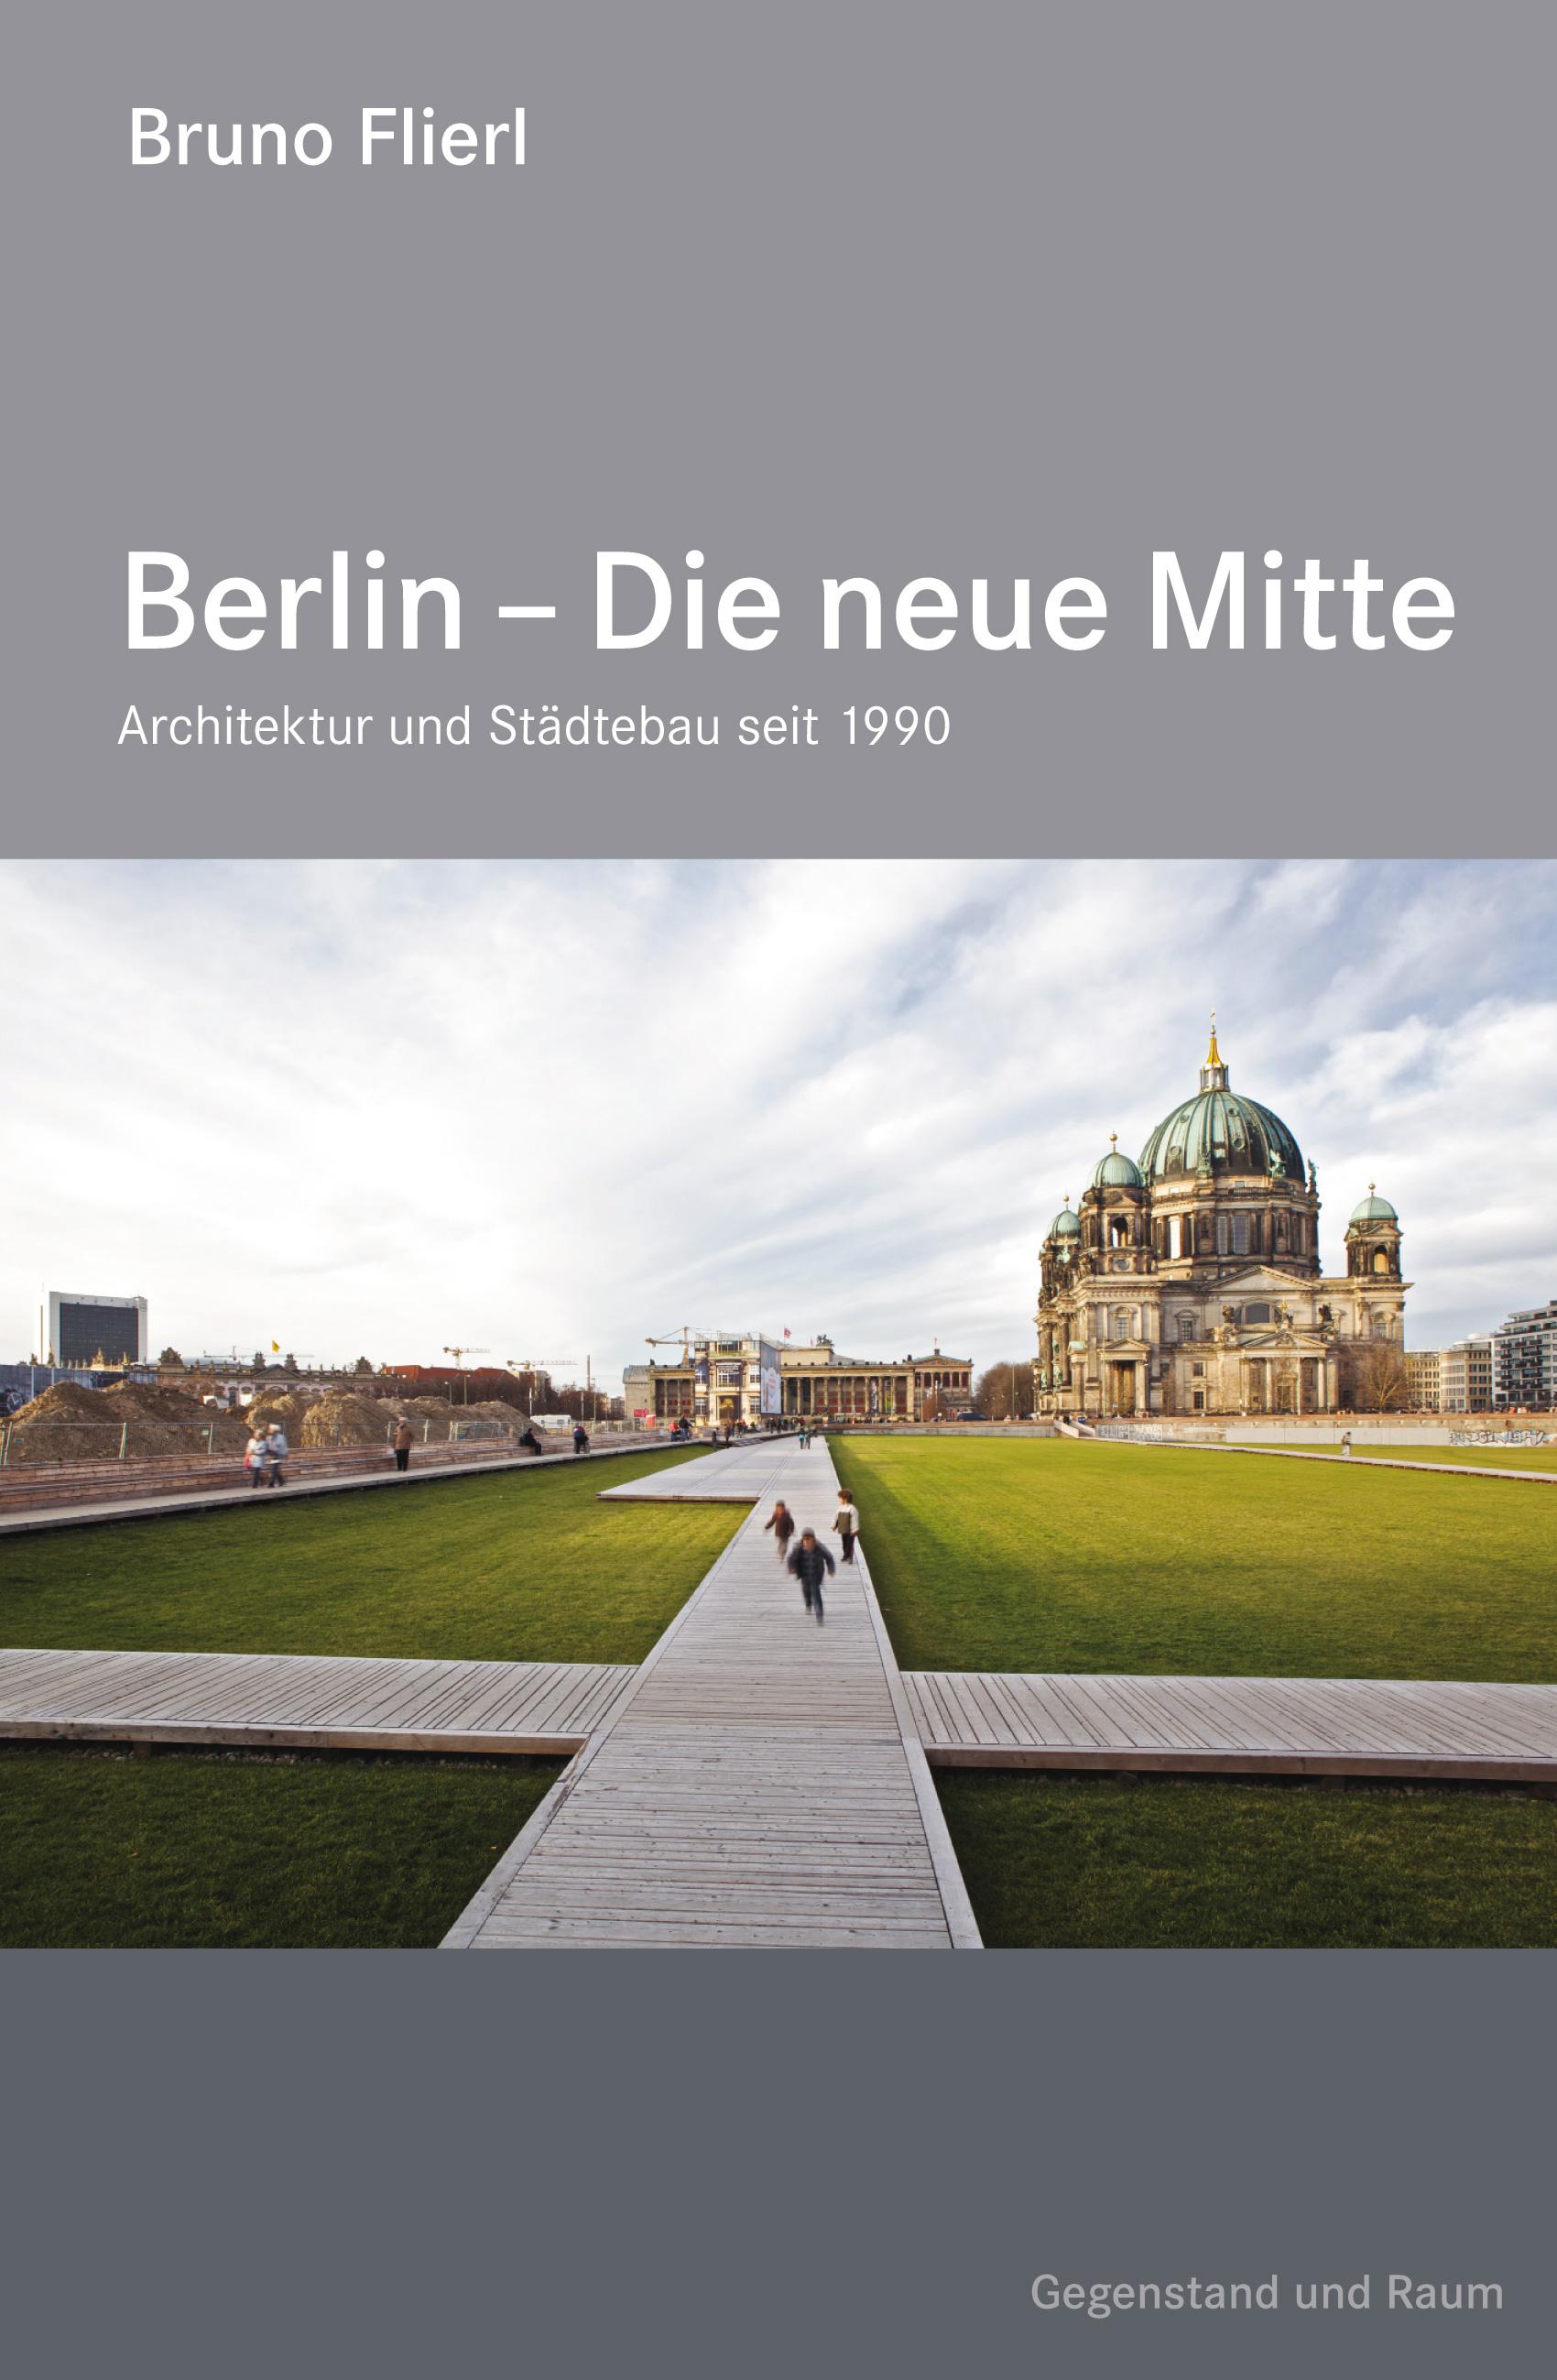 Edition Gegenstand und Raum „Berlin – Die neue Mitte“